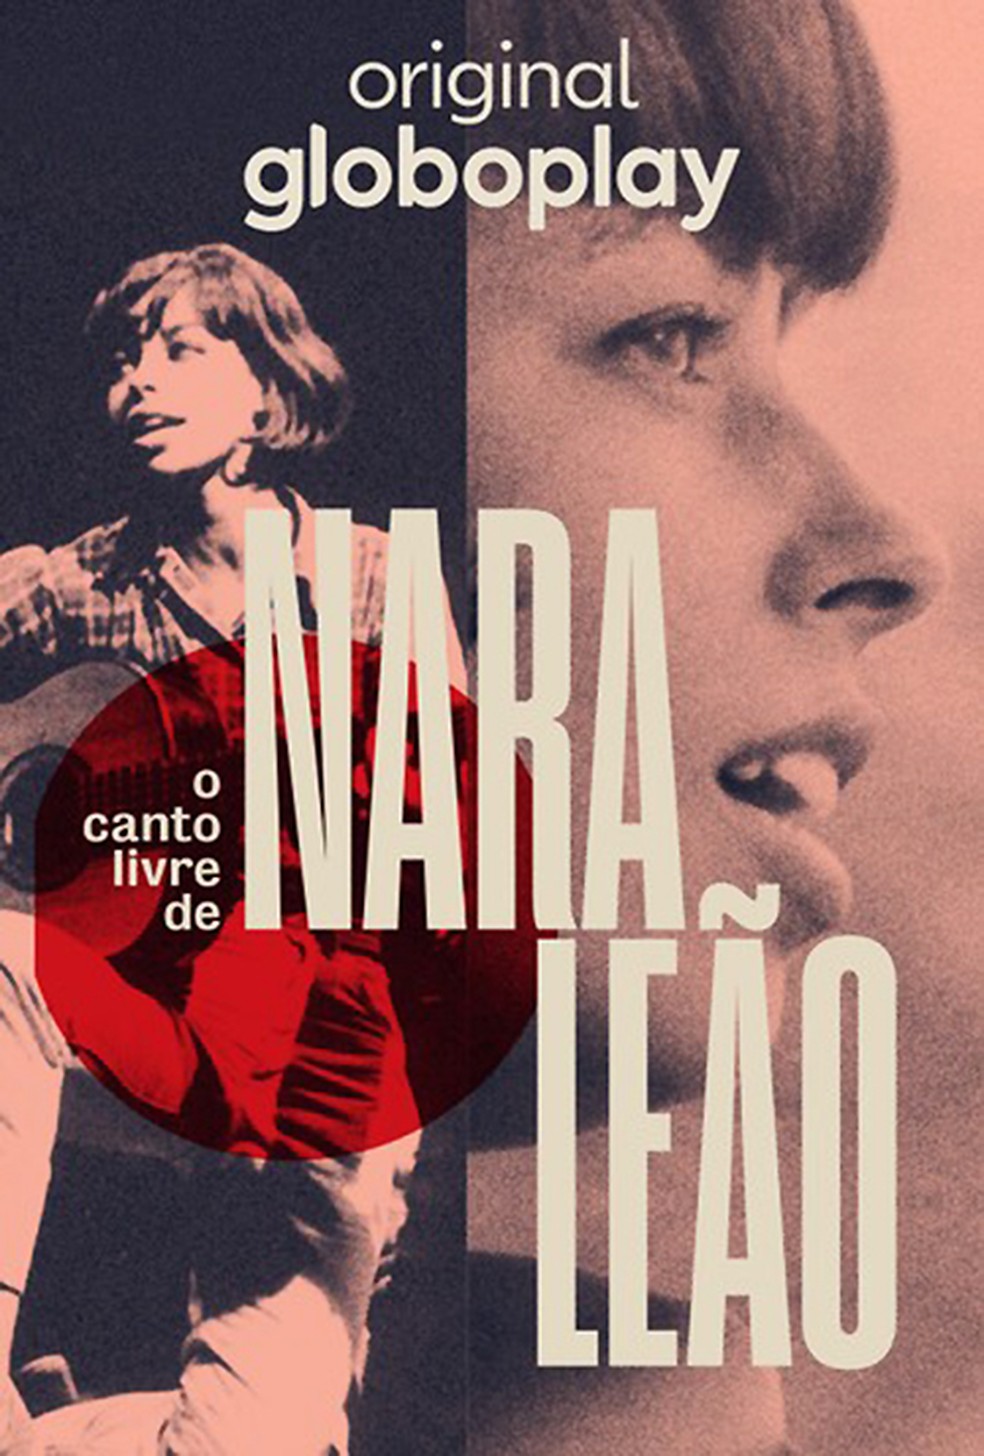 Nara Leão ressurge dócil e indomada em série documental sobre a vida livre da cantora | Blog do Mauro Ferreira | G1